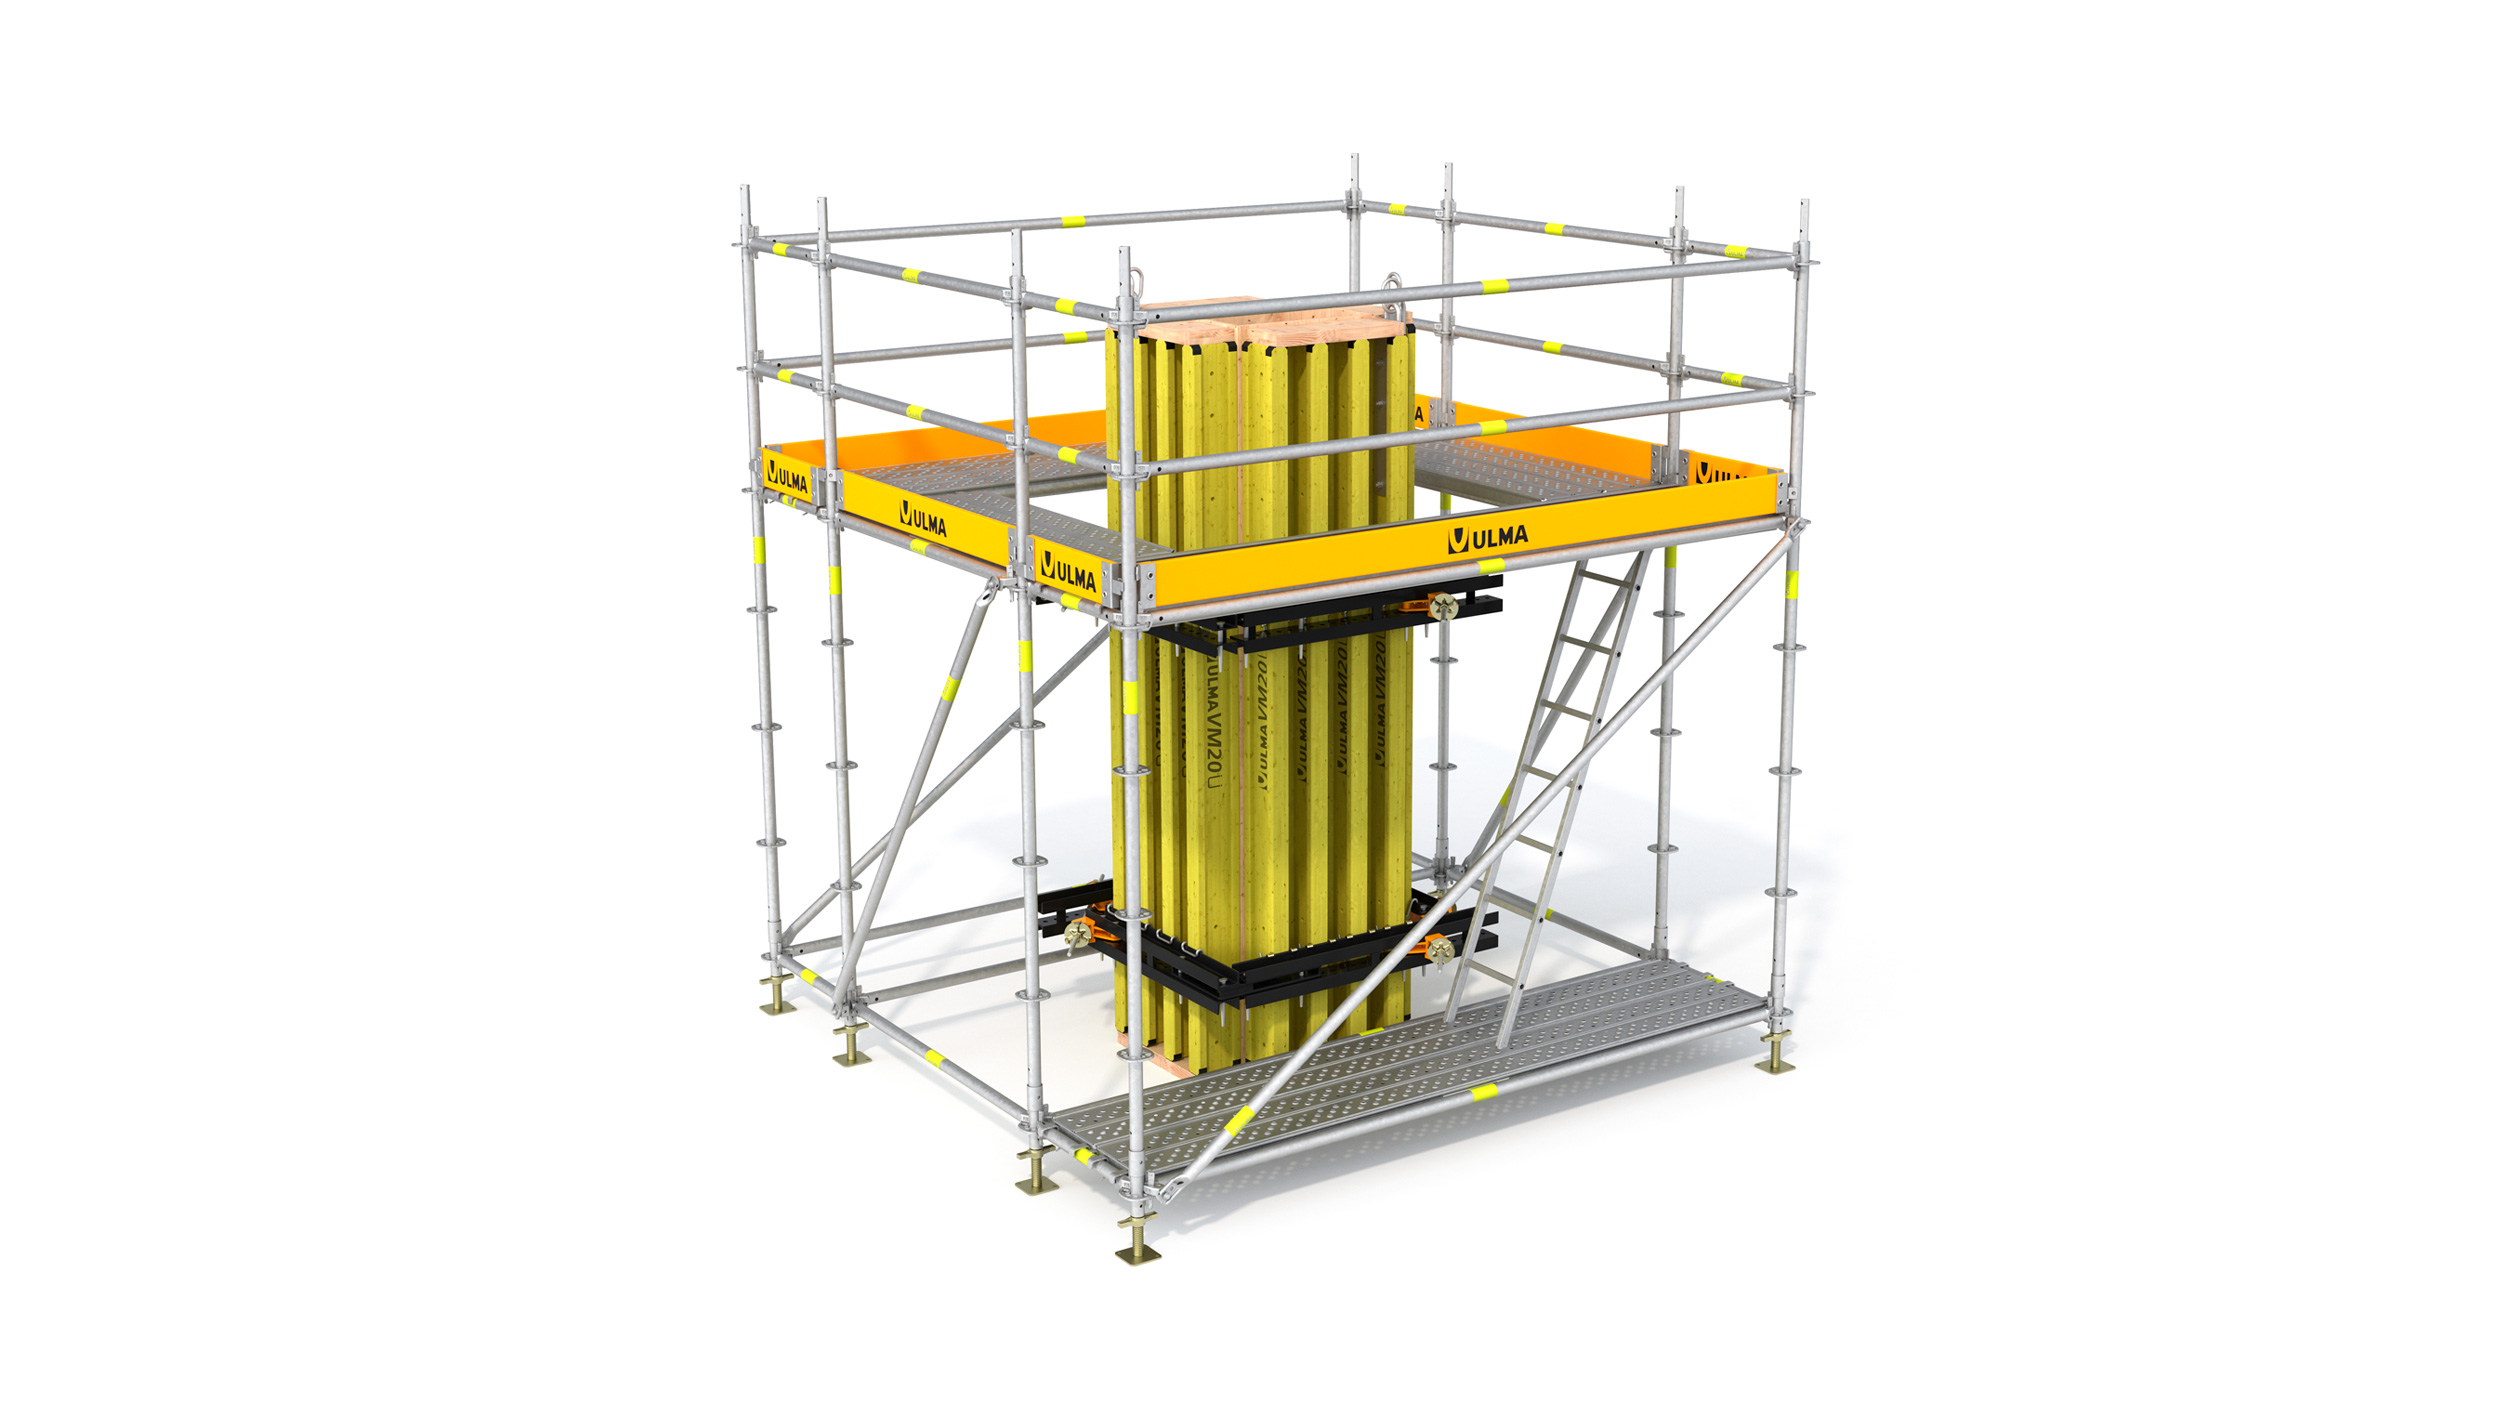 Torres de trabajo que permiten el acceso a operarios y materiales a distintos puntos de una estructura en construcción. Posibilita múltiples configuraciones.